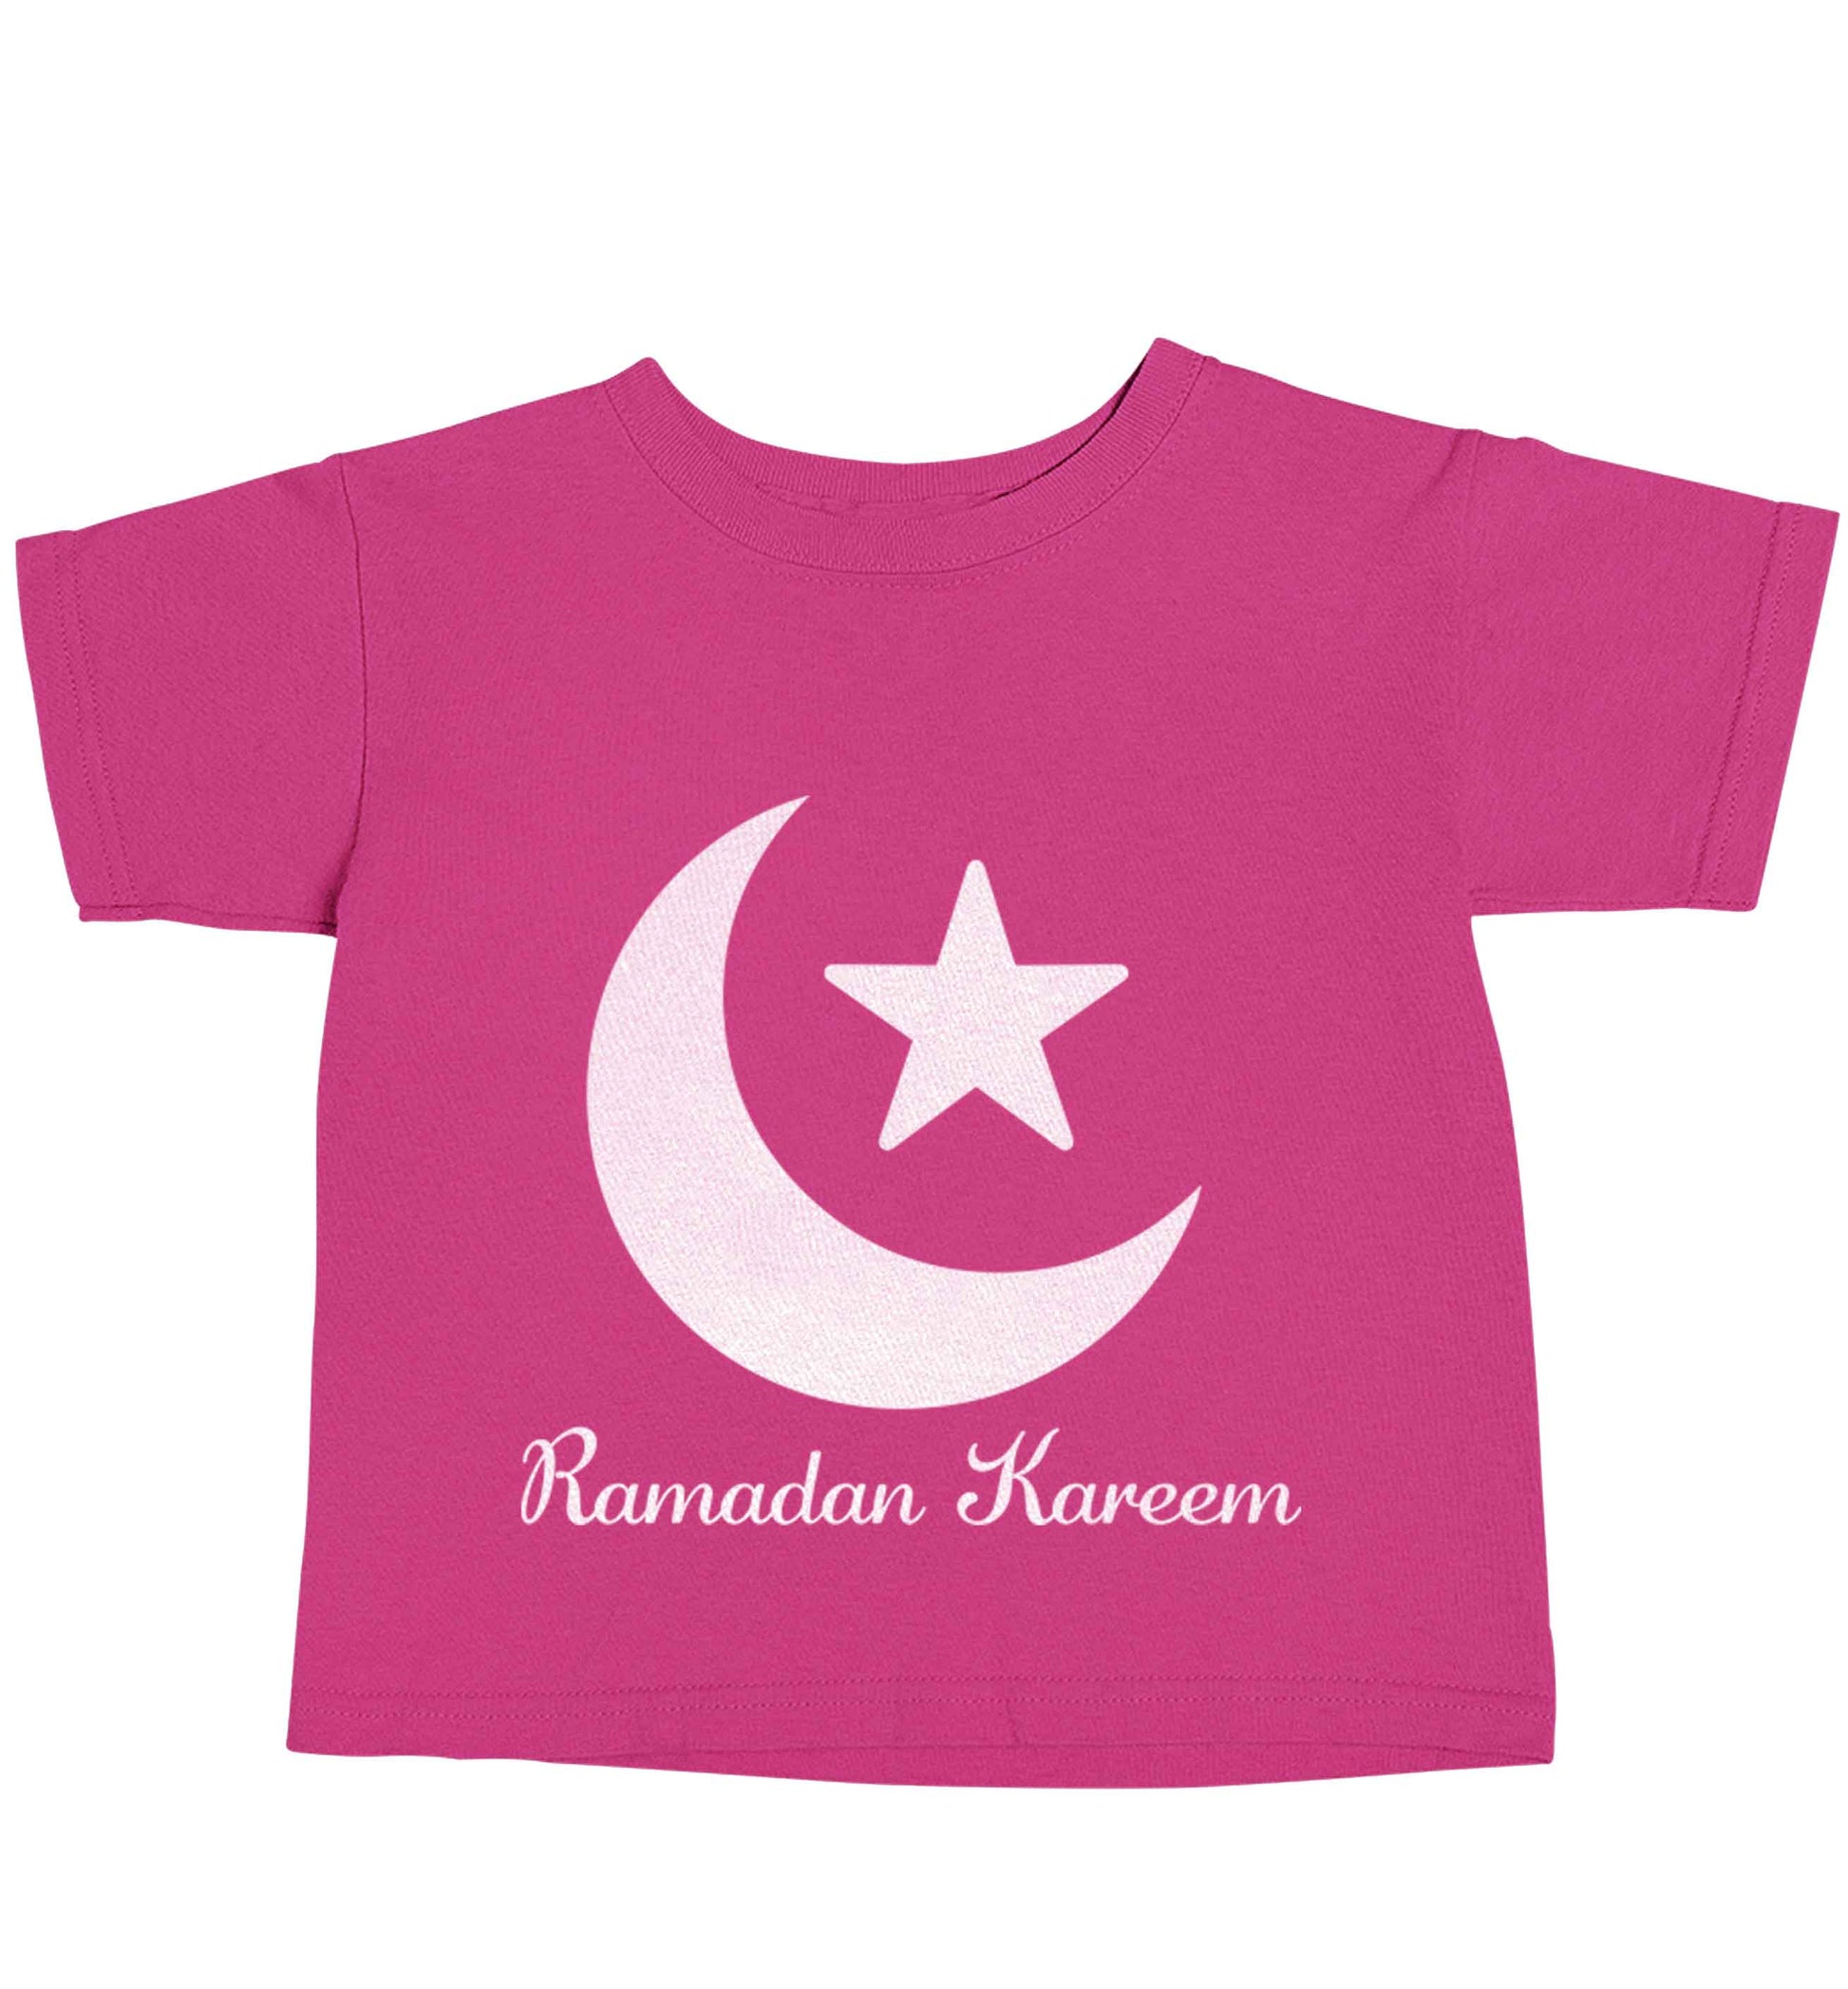 Ramadan kareem pink baby toddler Tshirt 2 Years